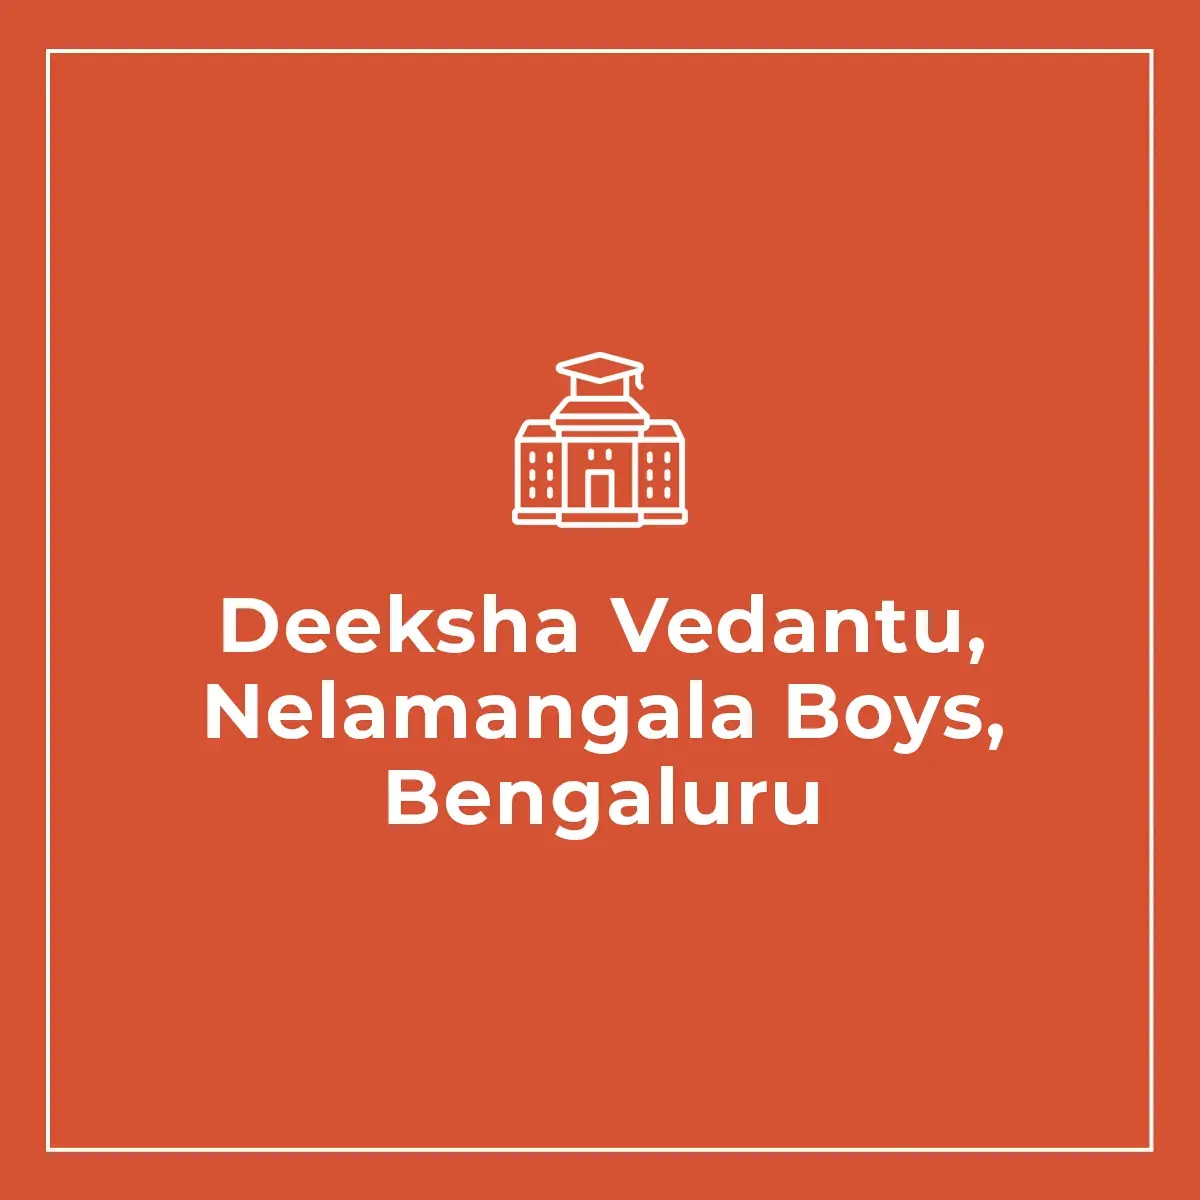 Deeksha Vedantu, Nelamangala Boys, Bengaluru